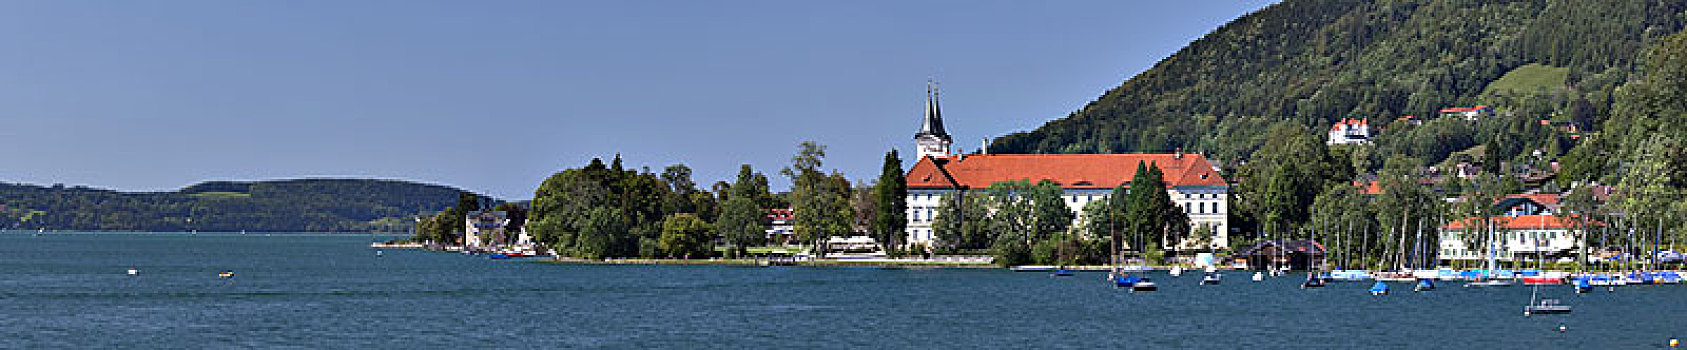 风景,泰根湖,巴伐利亚,酒厂,教堂,上巴伐利亚,德国南部,德国